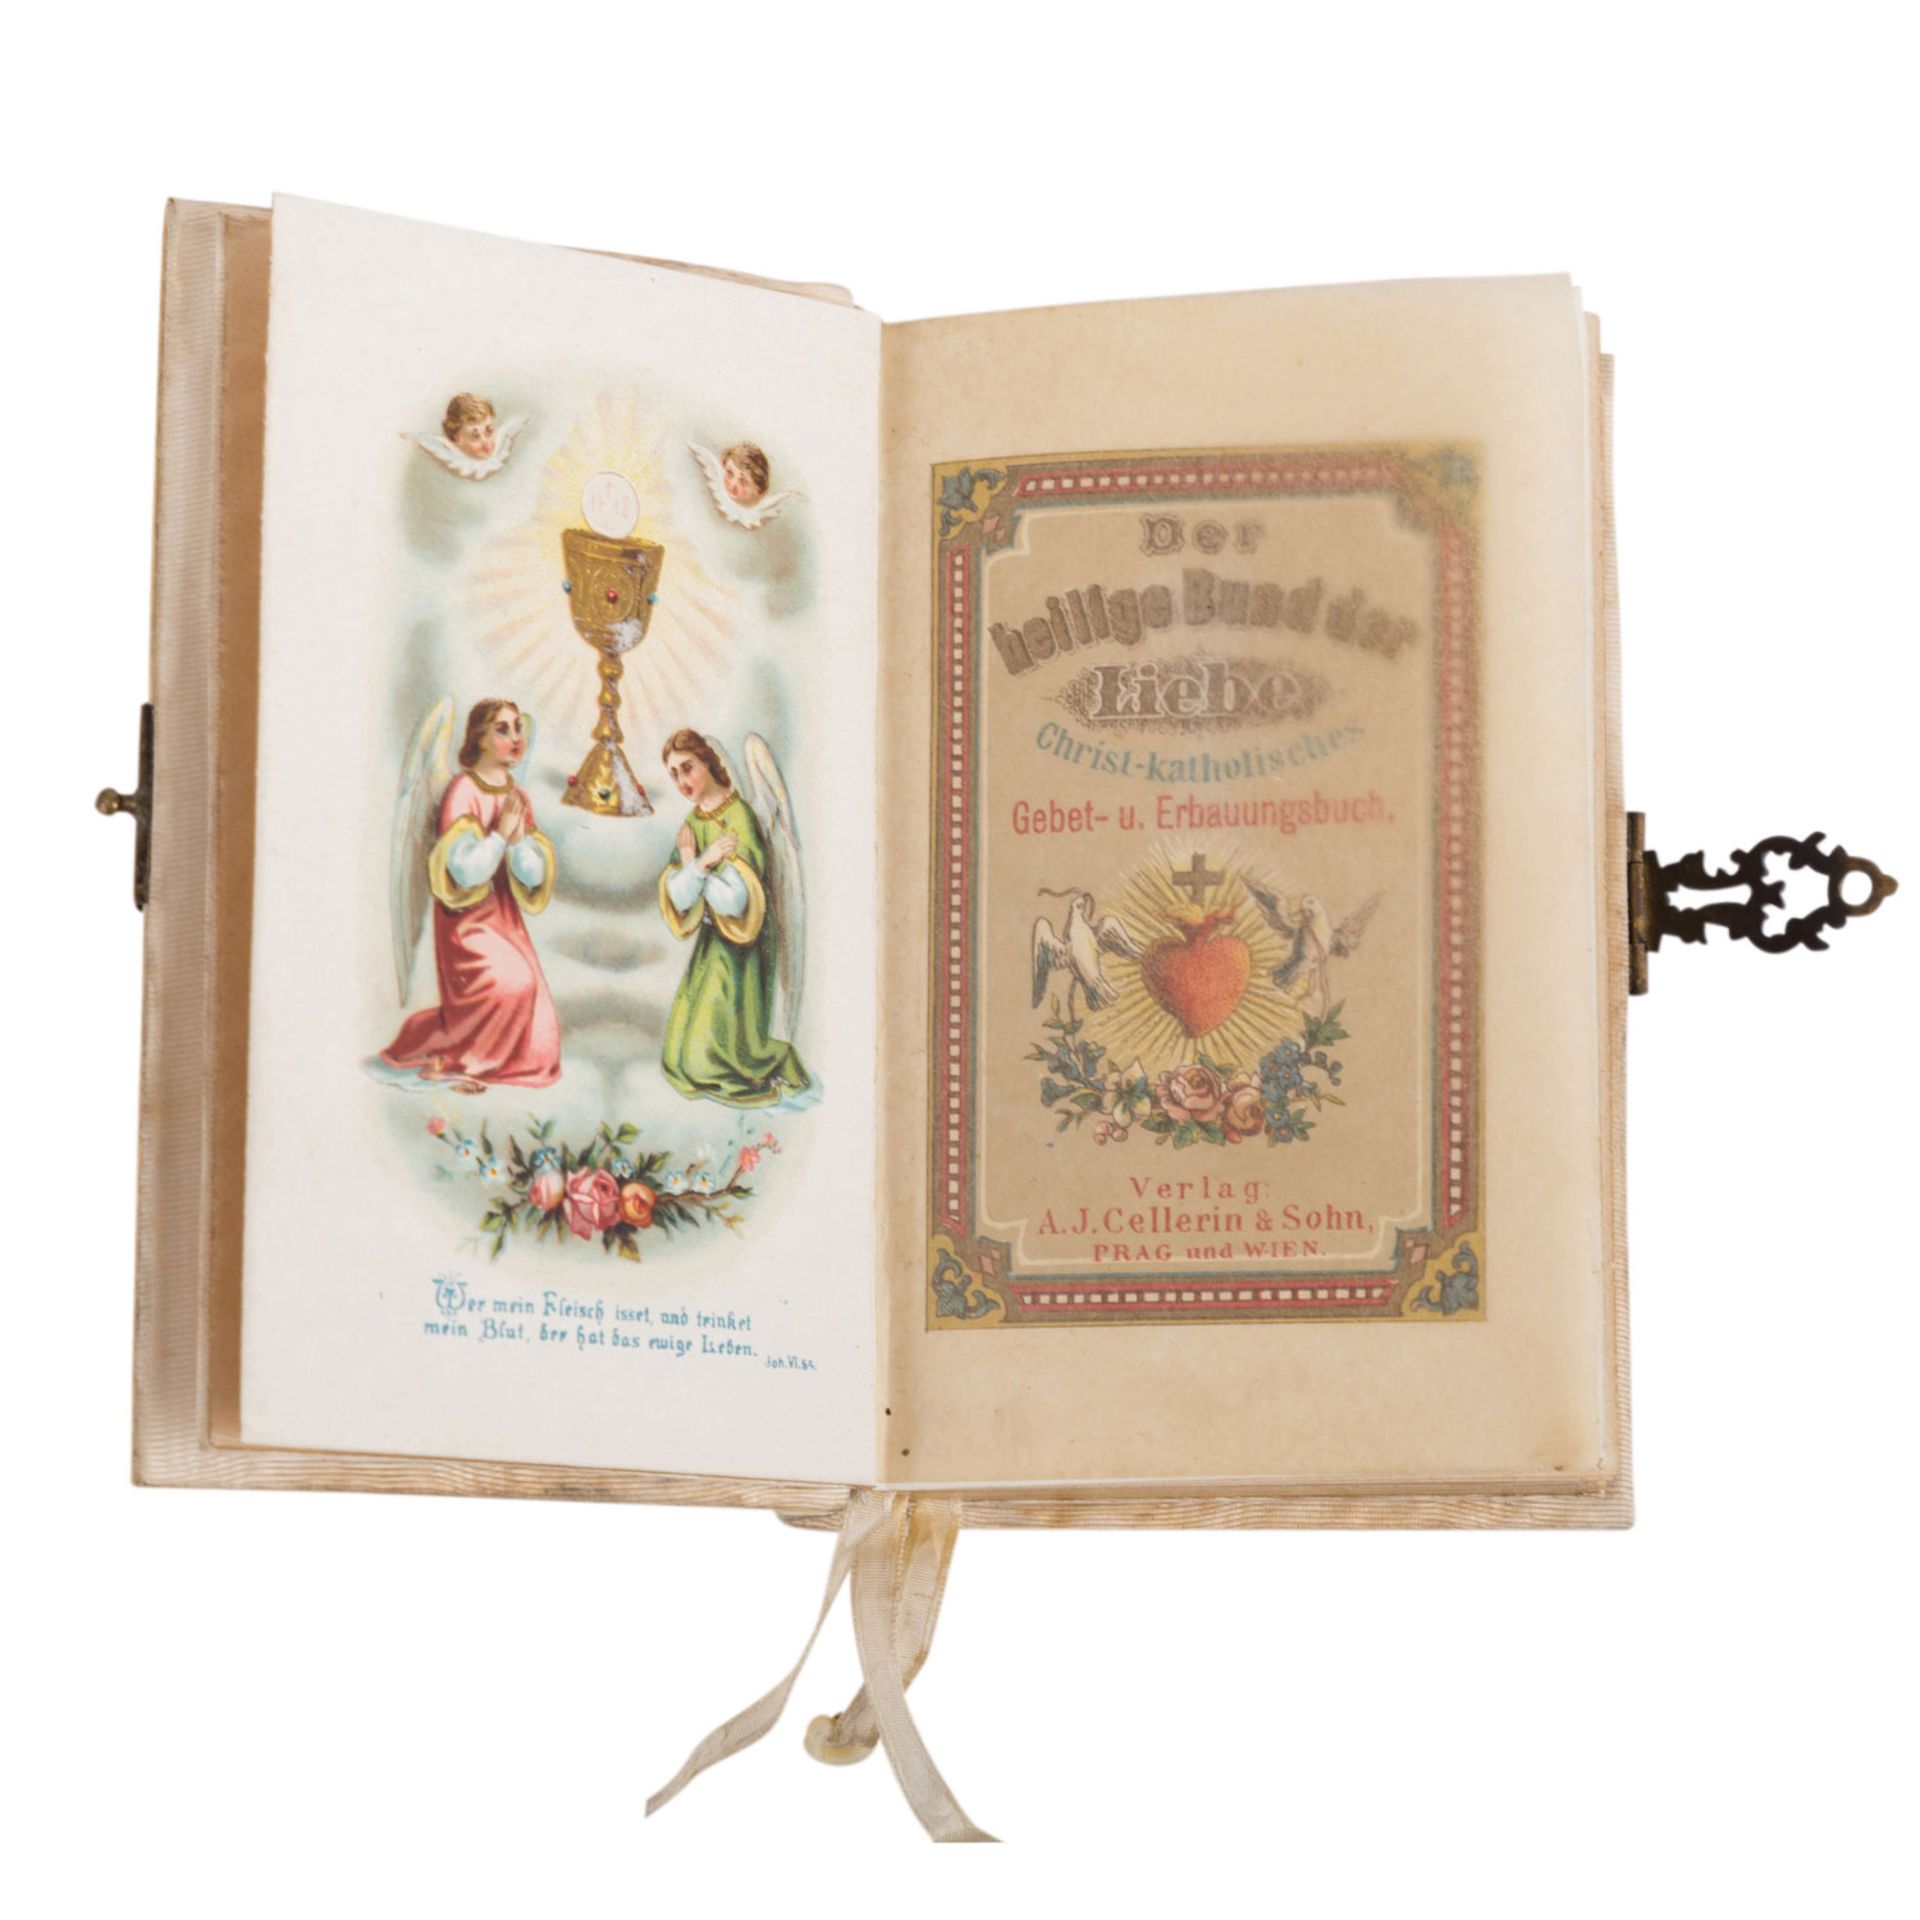 'Der heilige Bund der Liebe, christ.-katholisches Gebet- u. Erbauungsbuch', Prag und Wien 1884. - Image 3 of 4